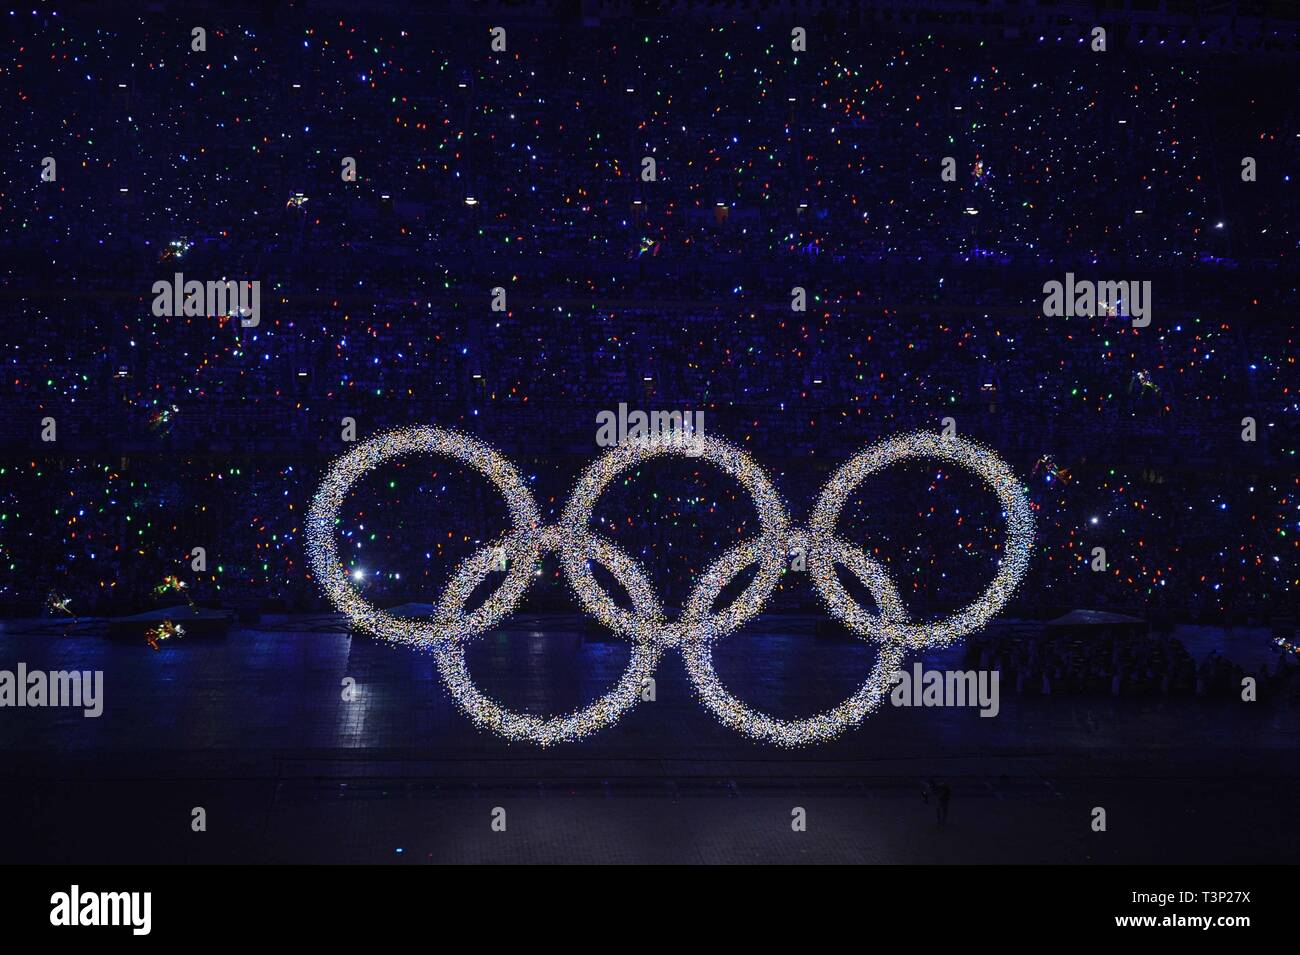 (190411) -- BEIJING, 11 de abril de 2019 (Xinhua) -- Foto tomada el 8 de agosto de 2008, muestra los anillos olímpicos brillando sobre una enorme pantalla de LED, anunciando la llegada de las Olimpiadas, durante la ceremonia de apertura de los Juegos Olímpicos de Beijing 2008 en el Estadio Nacional, o el Nido de Pájaro en Beijing, capital de China. Enviar atletas para los Juegos Olímpicos de Verano de Helsinki por primera vez en 1952 al ganar la candidatura para albergar los Juegos Olímpicos de Invierno de 2022 en 2015, la República Popular de China pasó a través de una notable historia de deportes, incluyendo nuestro éxito en la celebración de los Juegos Olímpicos de Verano de 2008 y prep. Foto de stock